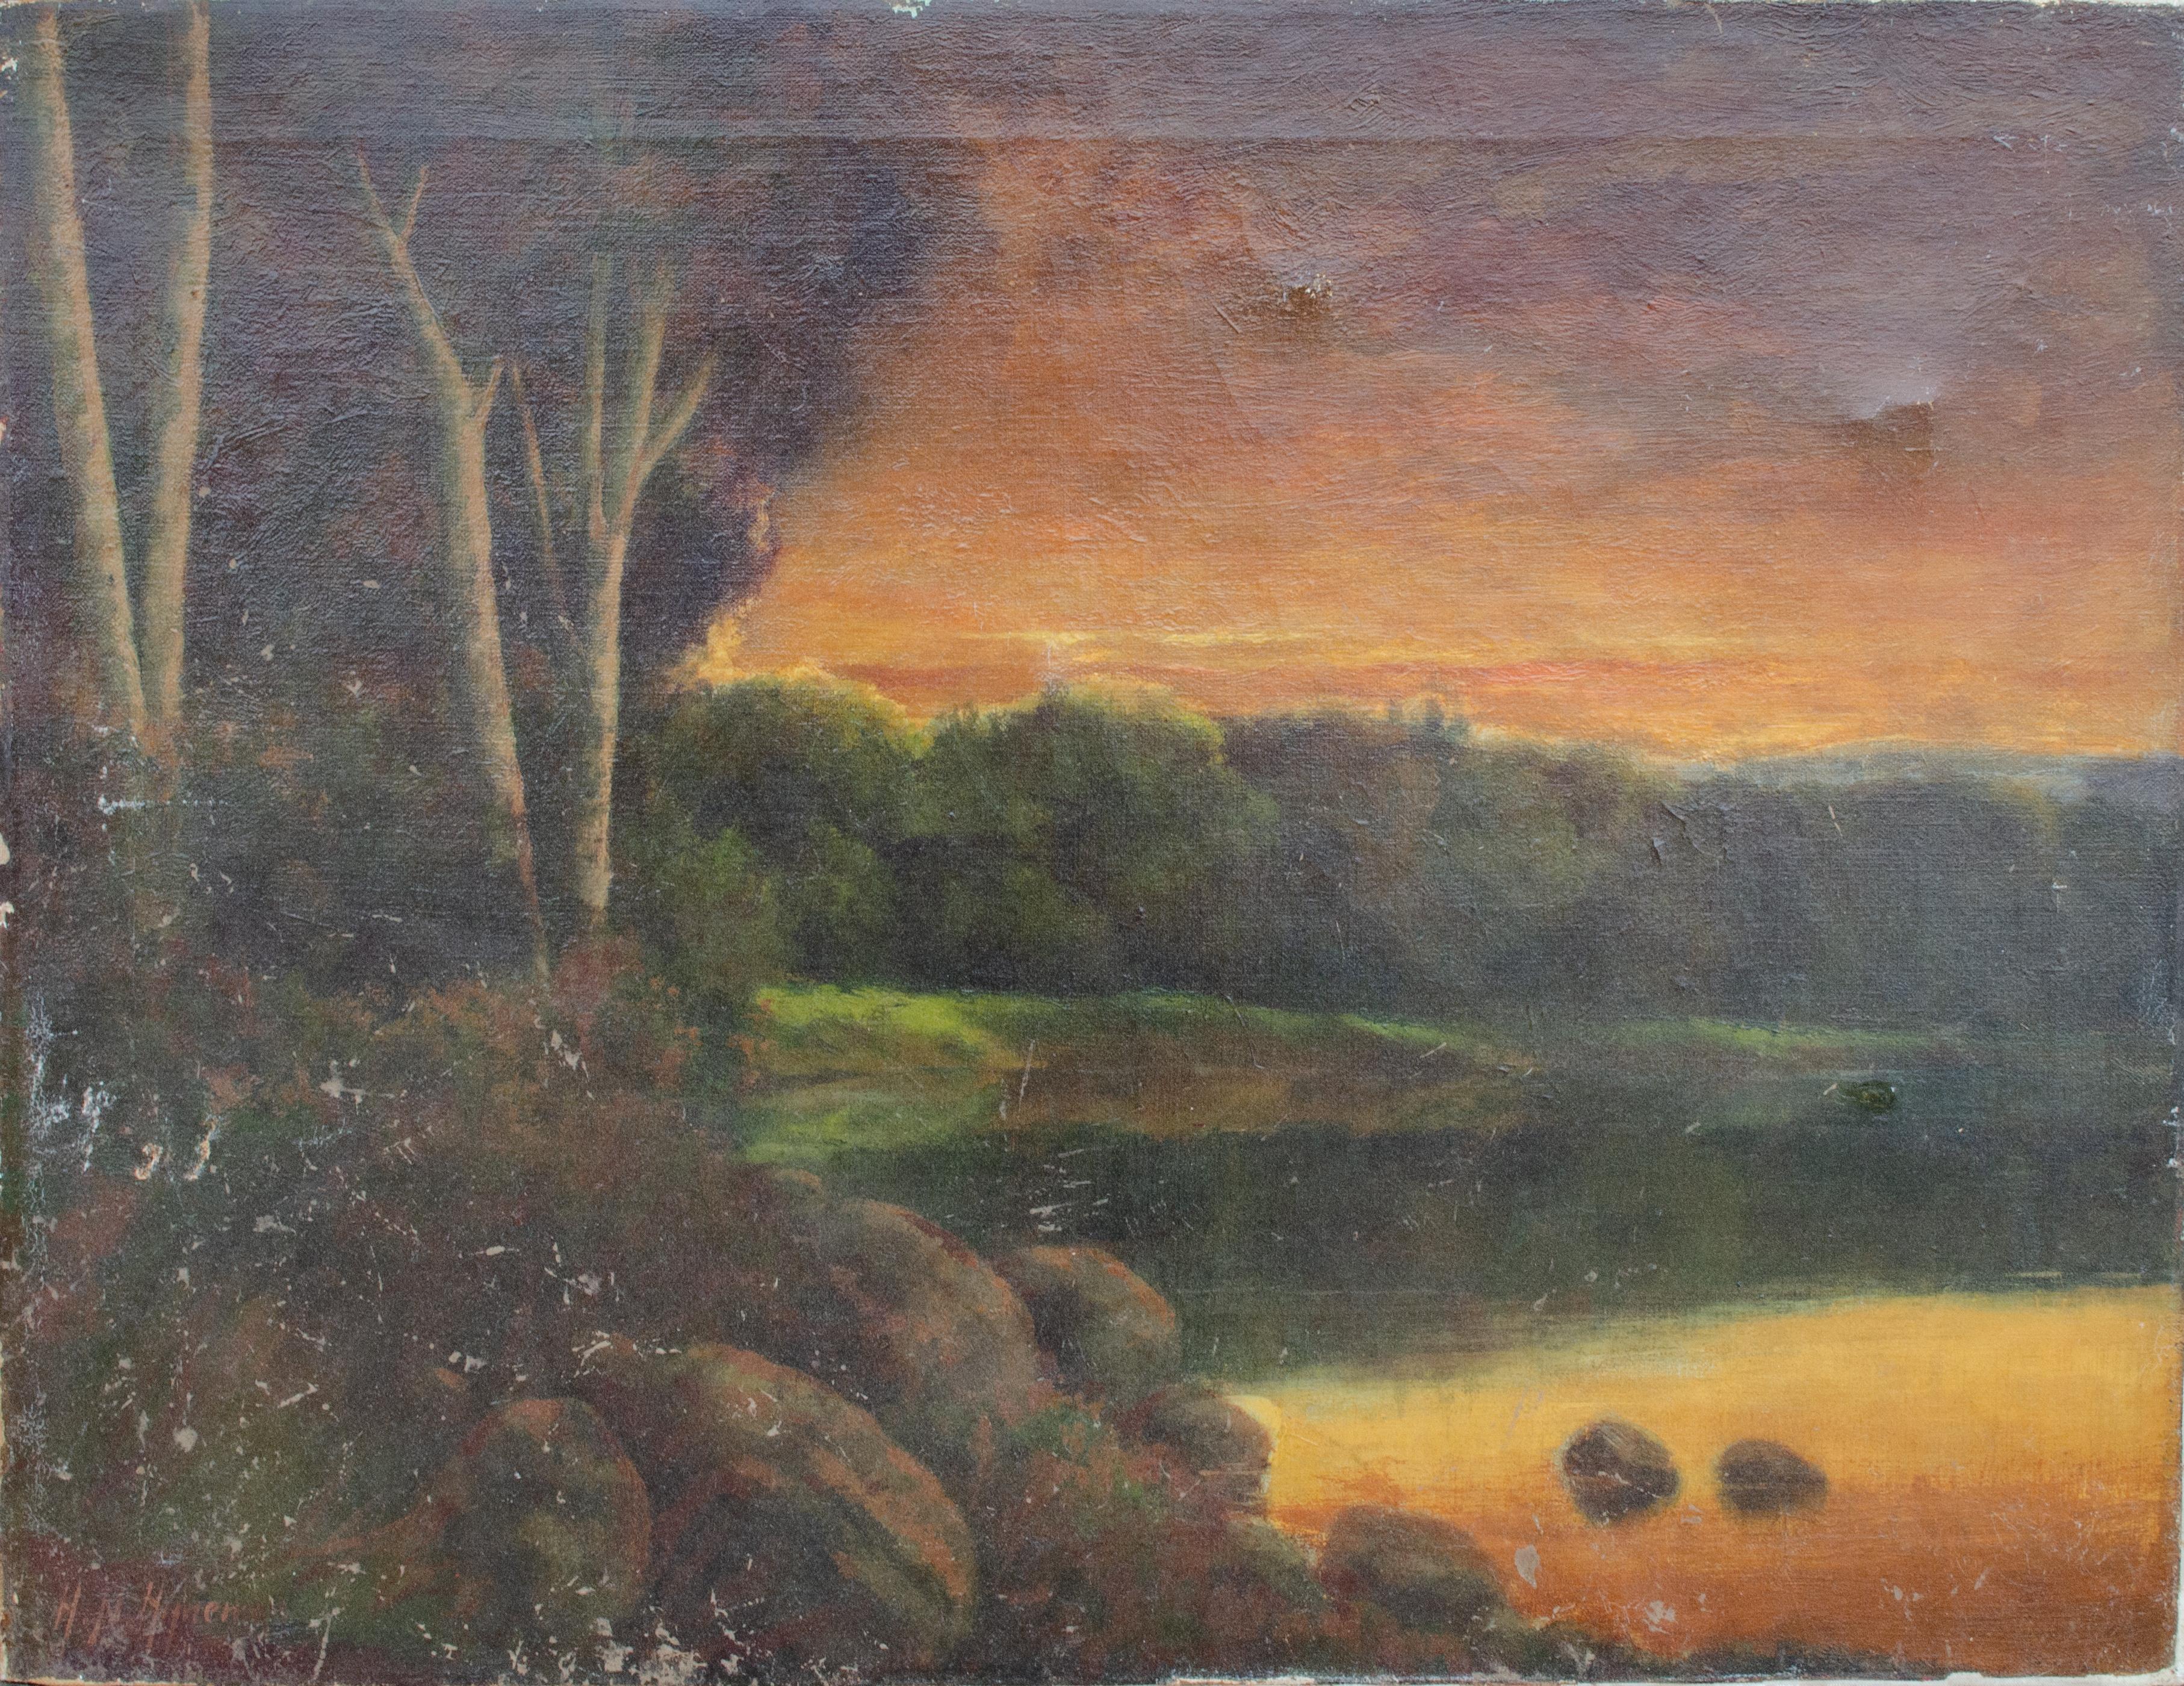 Herman N. Hyneman (Américain, 1849-1907)
Sans titre (paysage de coucher de soleil), 19e siècle
Huile sur toile
20 1/4 x 26 in.
Signé en bas à droite : H. N. Hyneman

Herman N. &New était un célèbre portraitiste et figuraliste américain, lié à